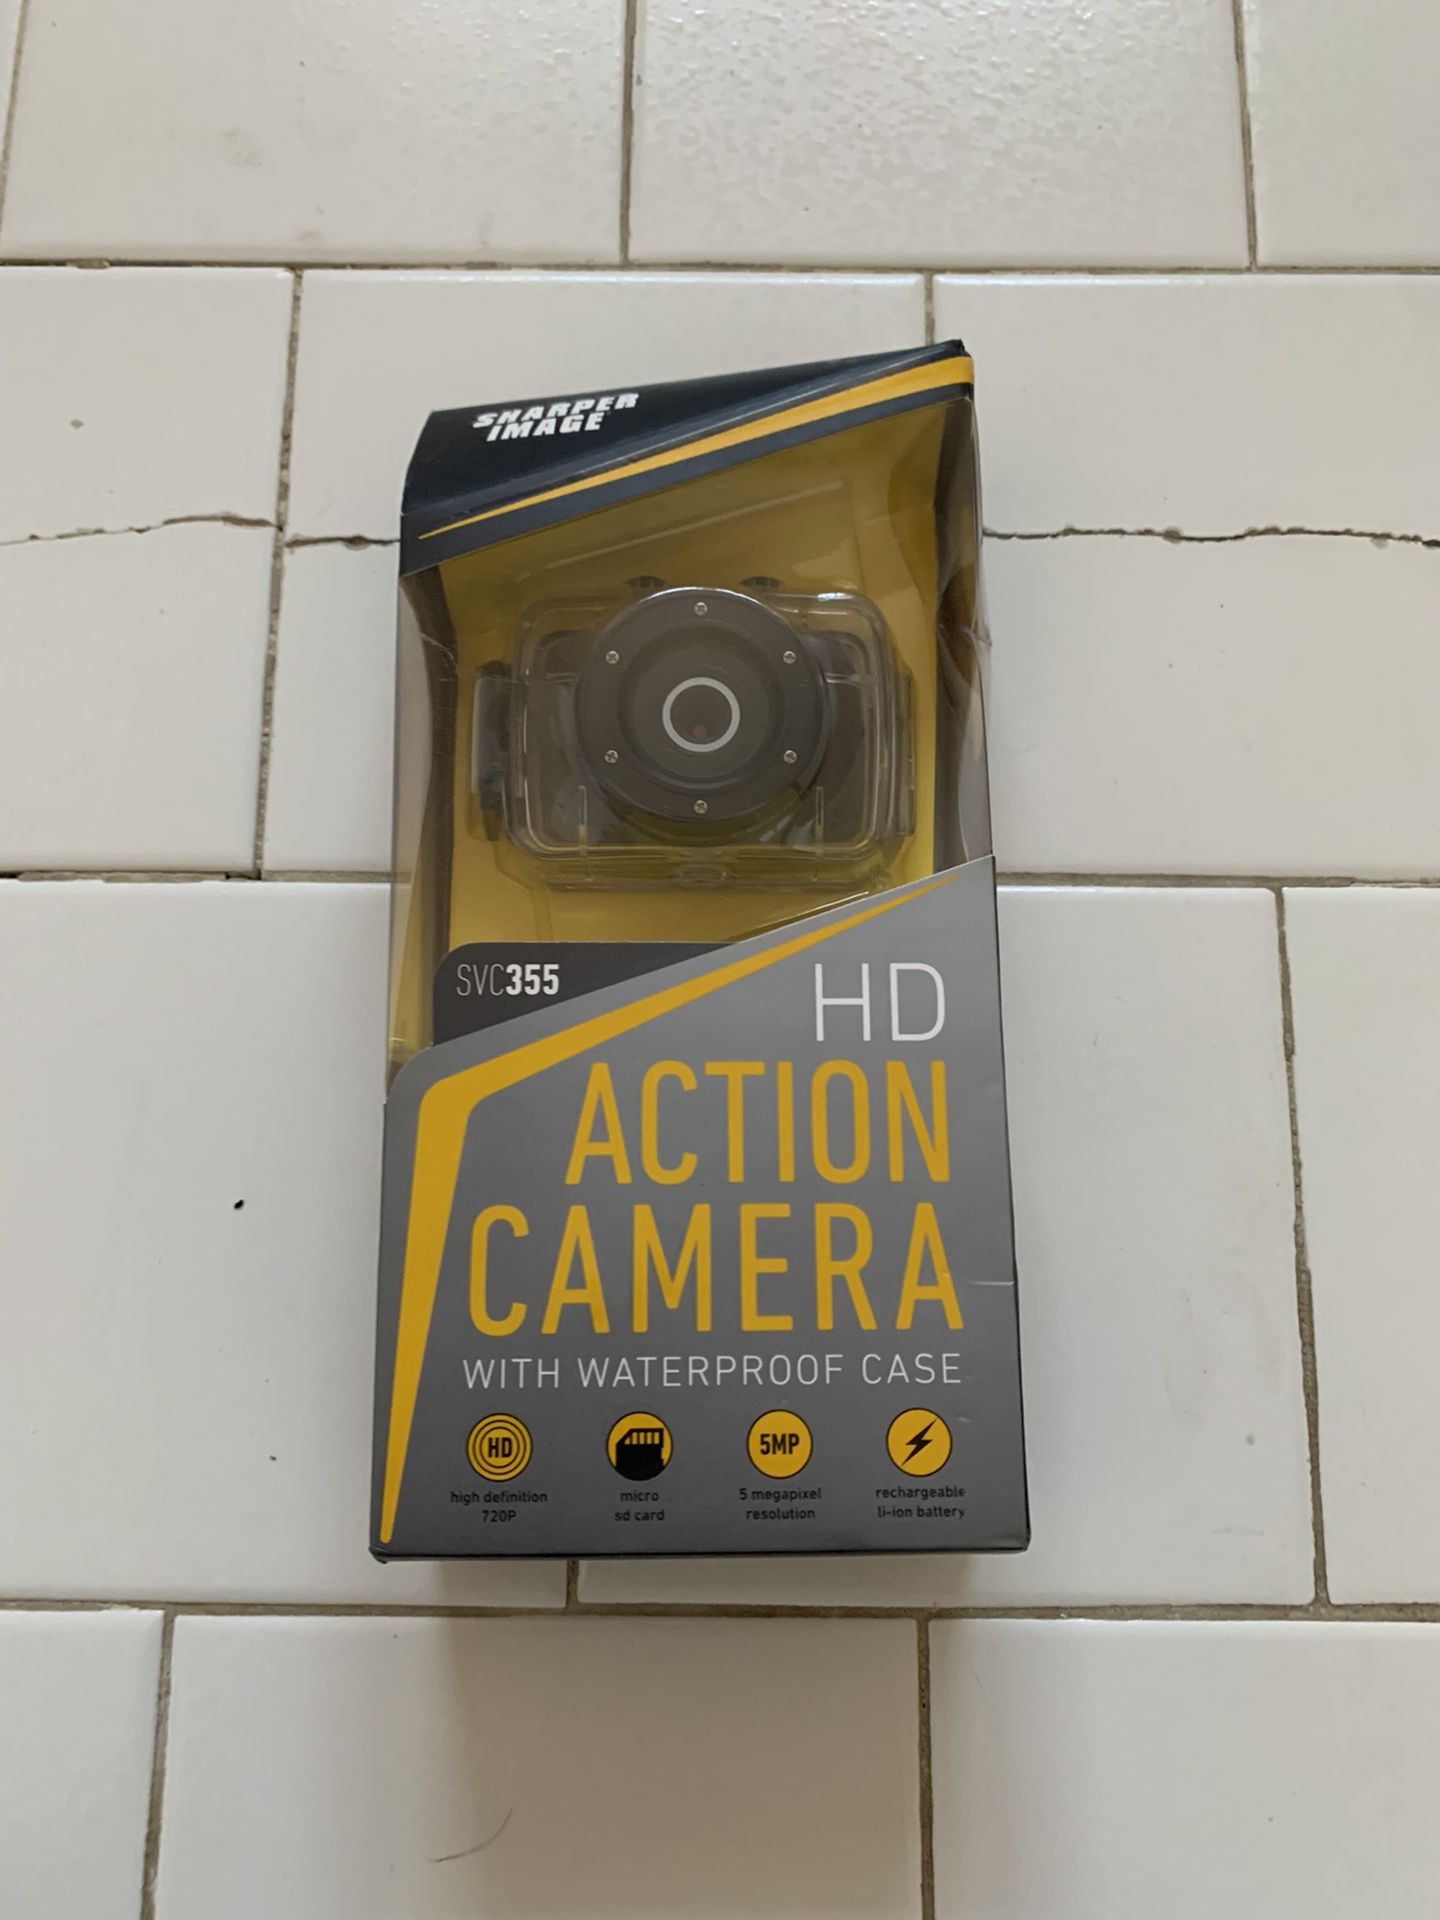 HD Action Camera